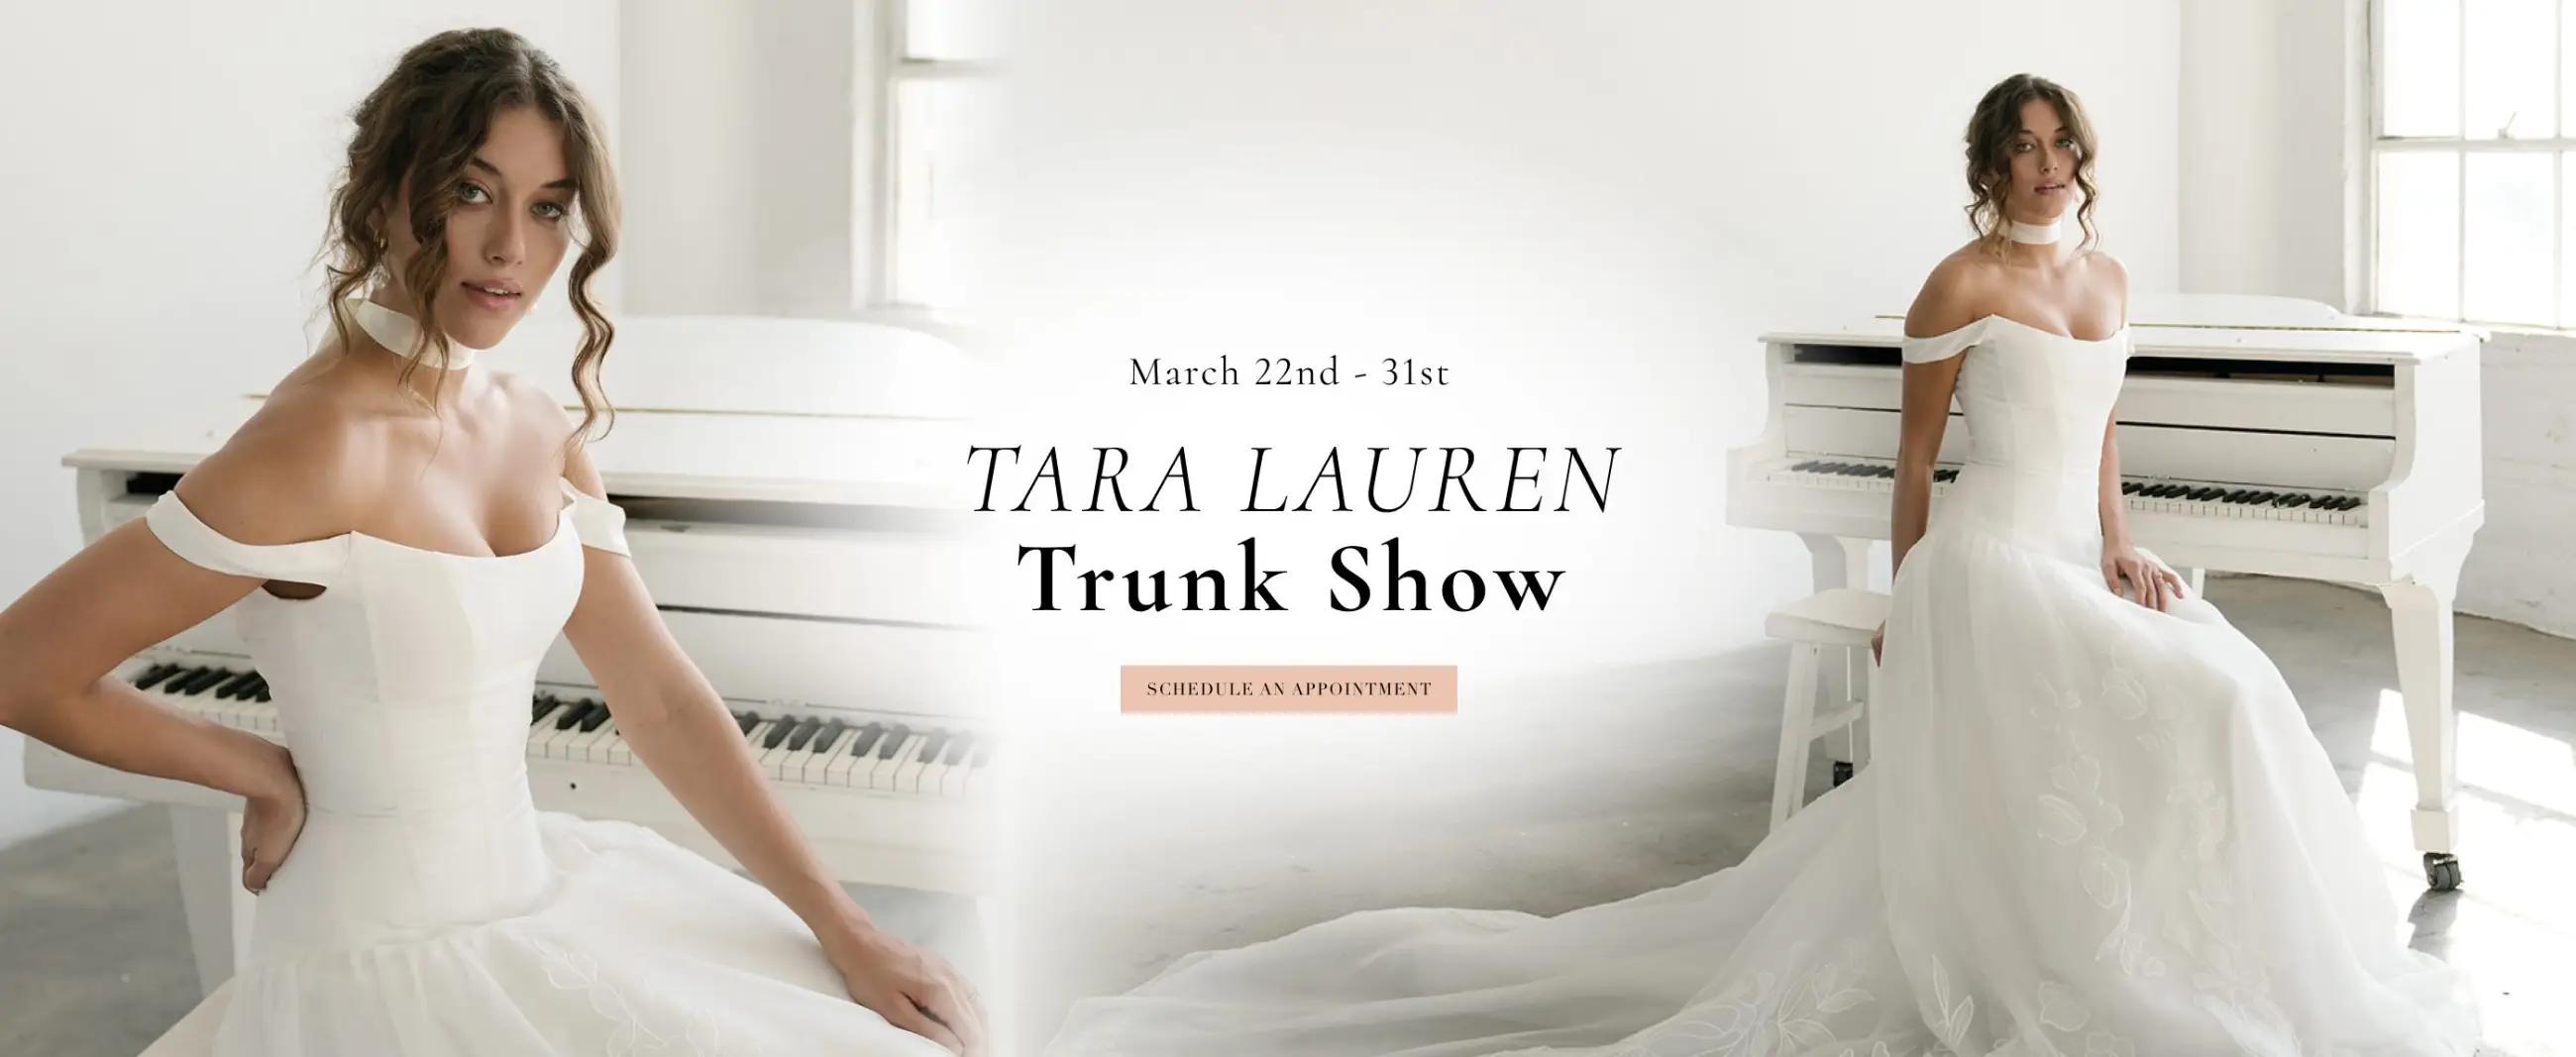 TARA LAUREN TRUNK SHOW